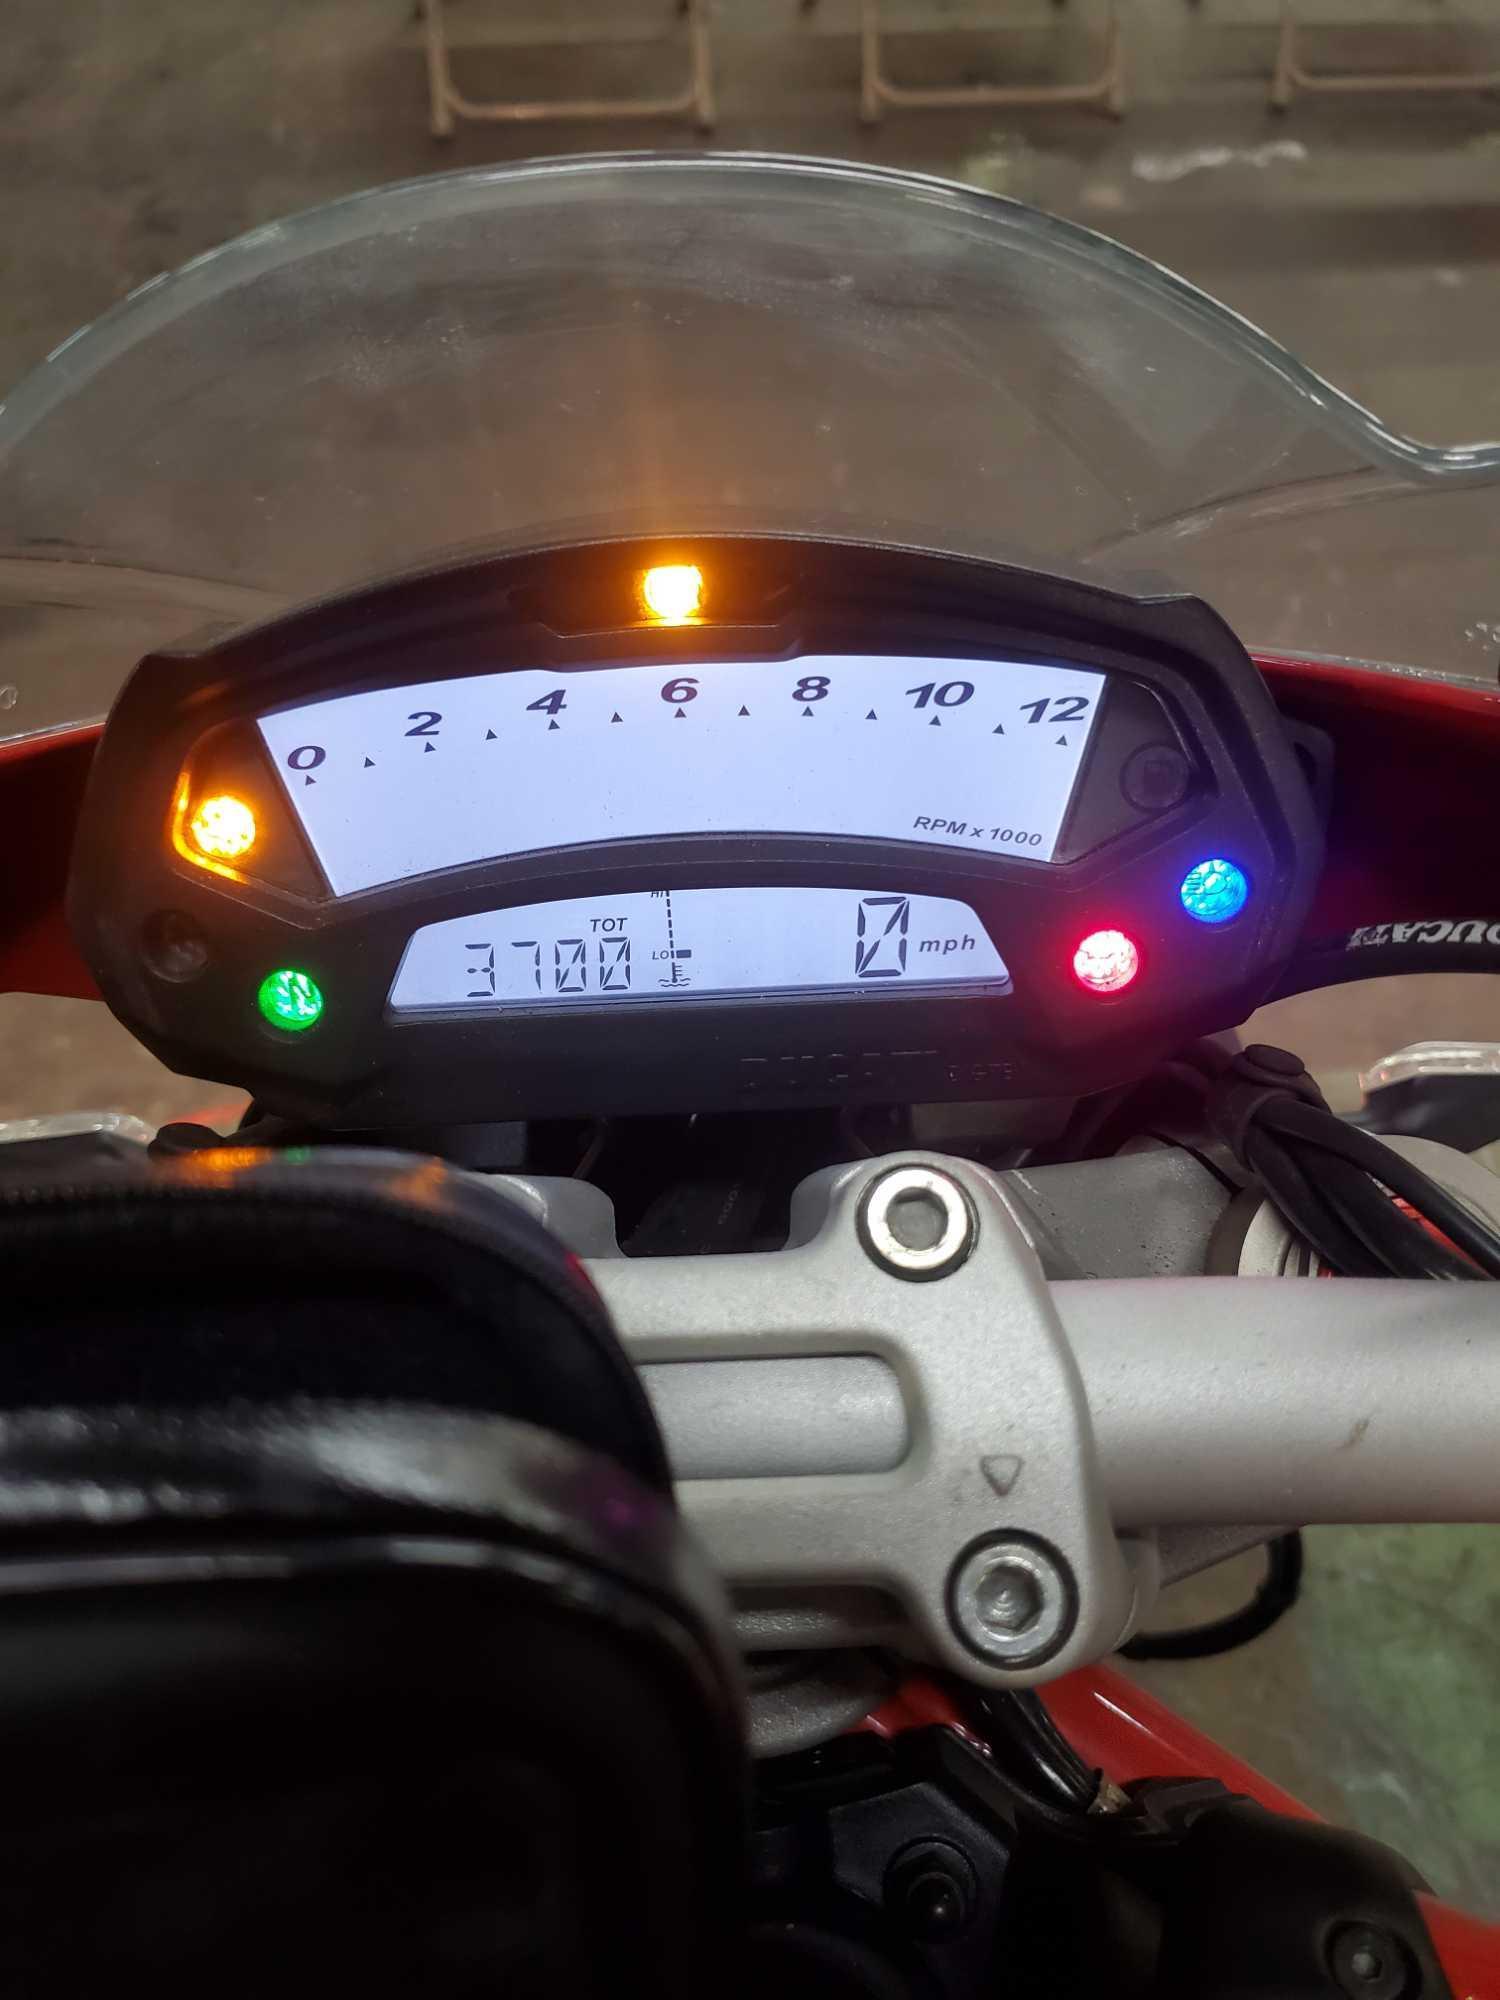 2013 Ducati 1100 Monster